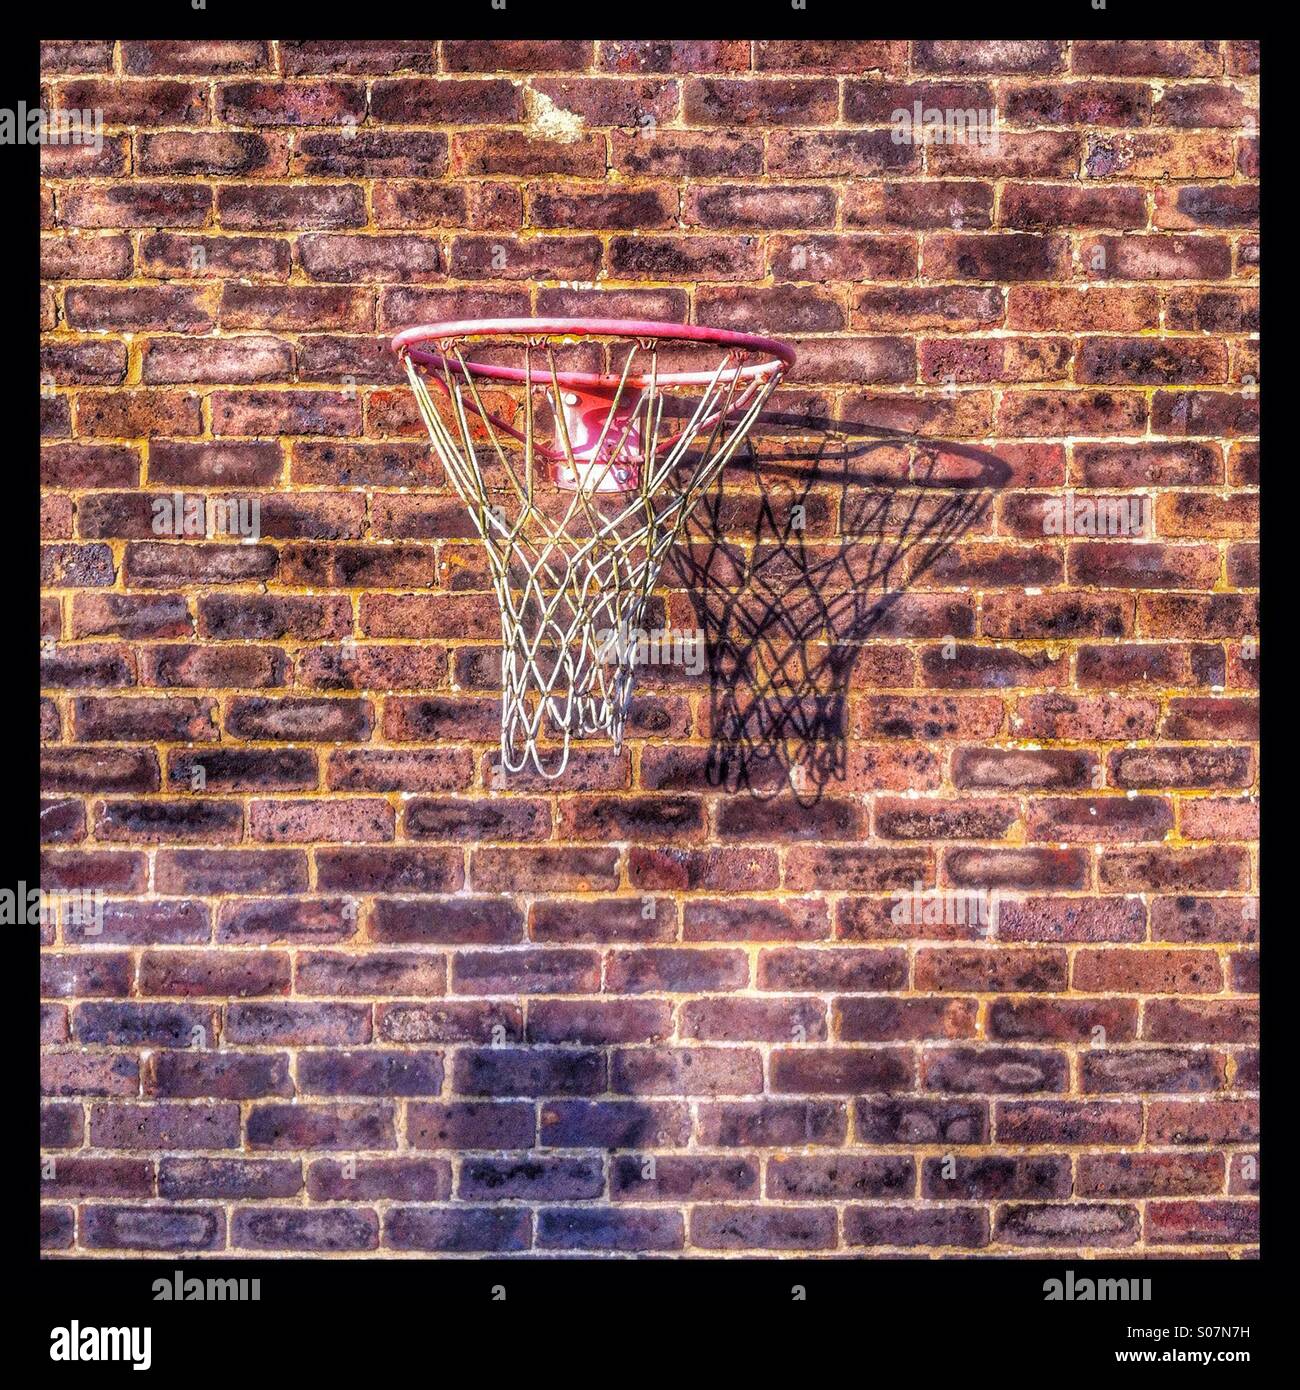 Netball net mounted on a brick wall Stock Photo